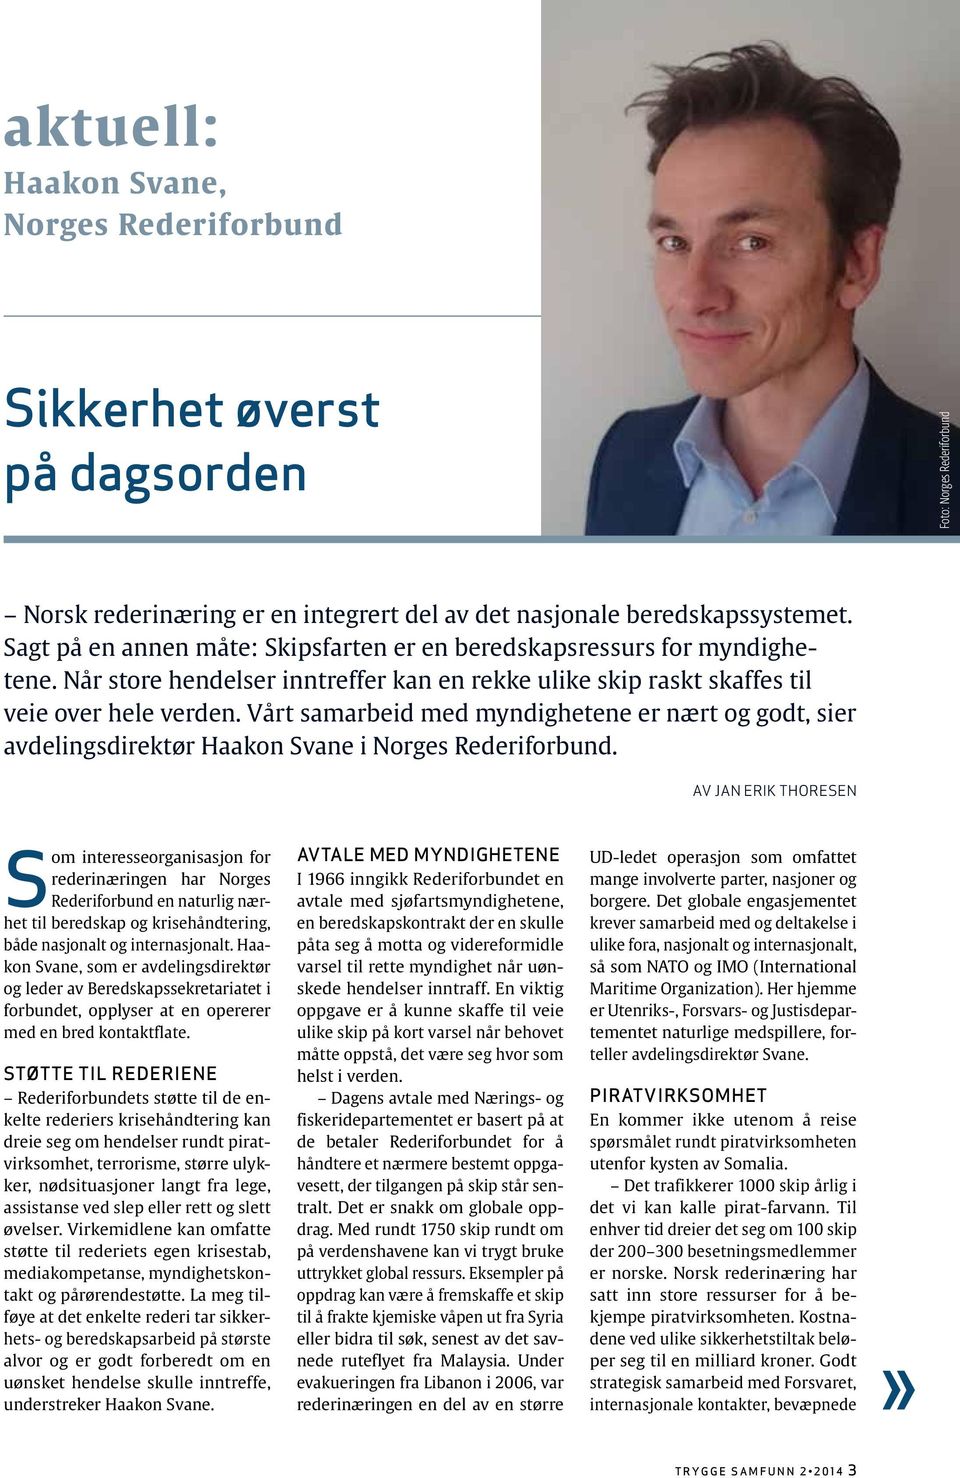 Vårt samarbeid med myndighetene er nært og godt, sier avdelingsdirektør Haakon Svane i Norges Rederiforbund.